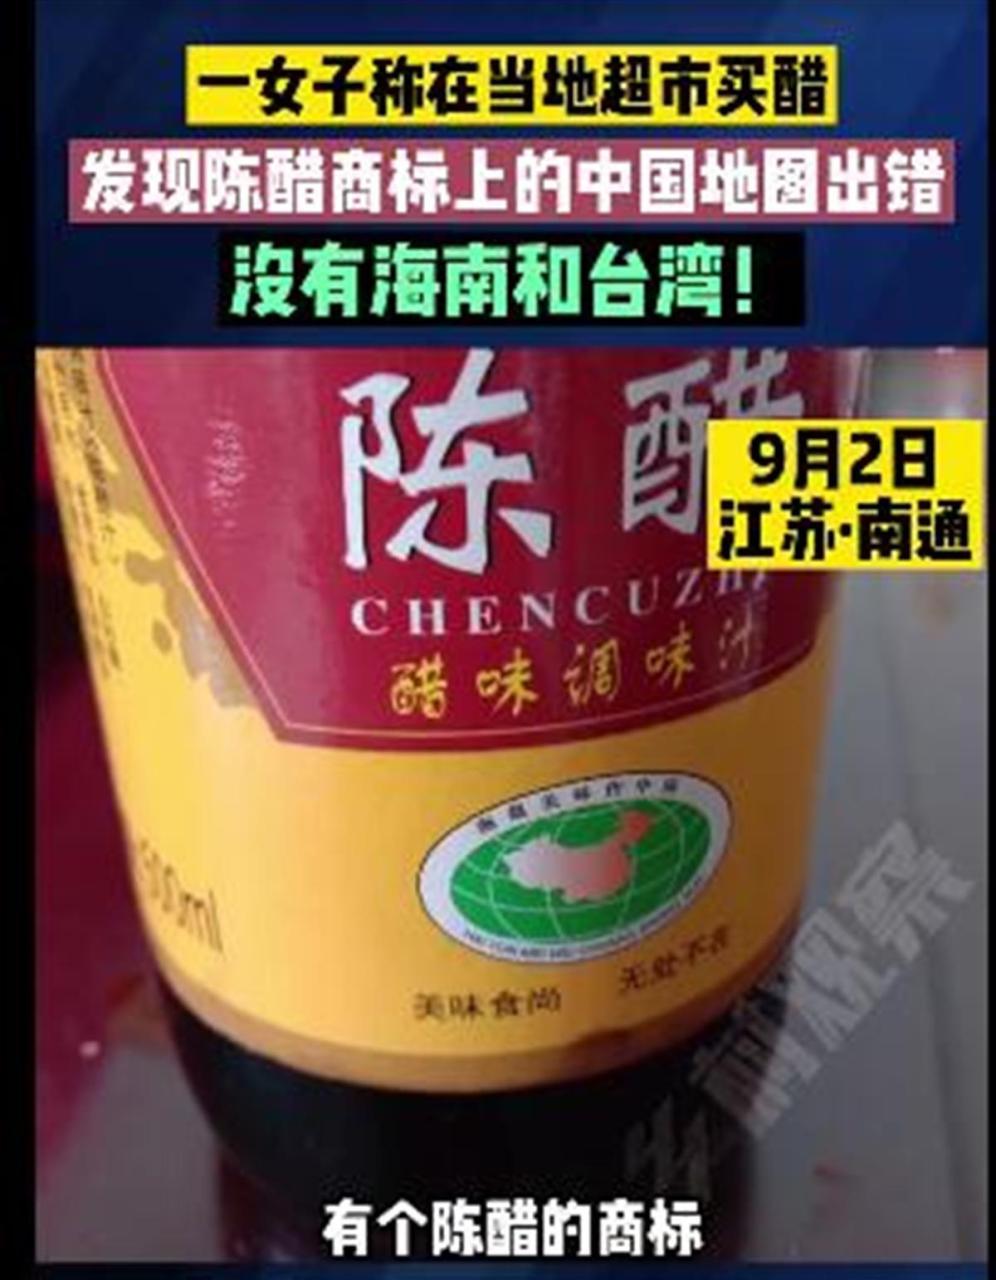 醋瓶包装地图无台湾和海南（中国地图少了台湾和海南违法吗）